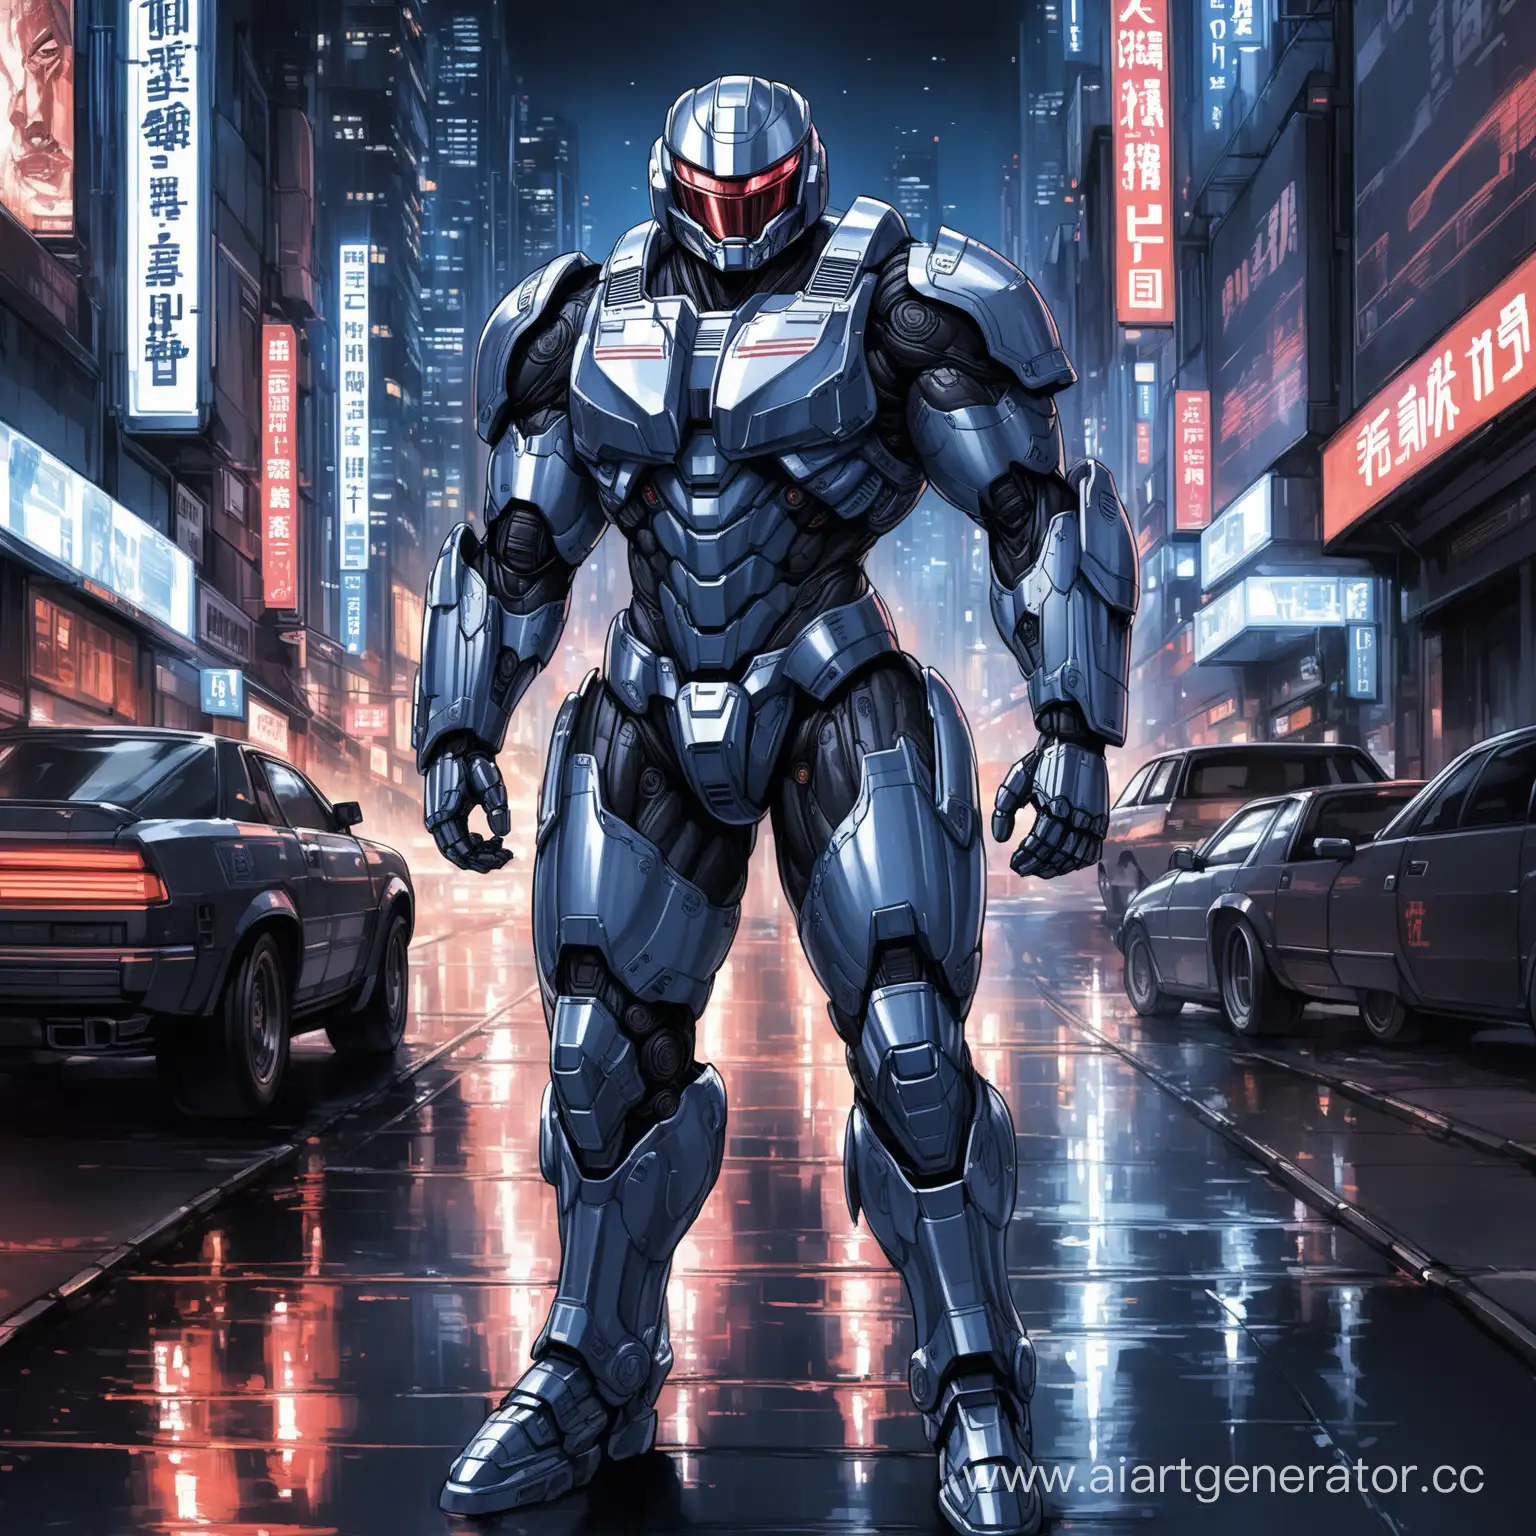 Высокотехнологичный, брутальный, мощный, тяжело бронированный костюм, имеющий дополнительную усиленную броню в стиле Robocop, оснащен самыми передавшими технологиями во вселенной Robocop далекого будущего, телосложением бодибилдера на фоне ночных улиц мегаполиса